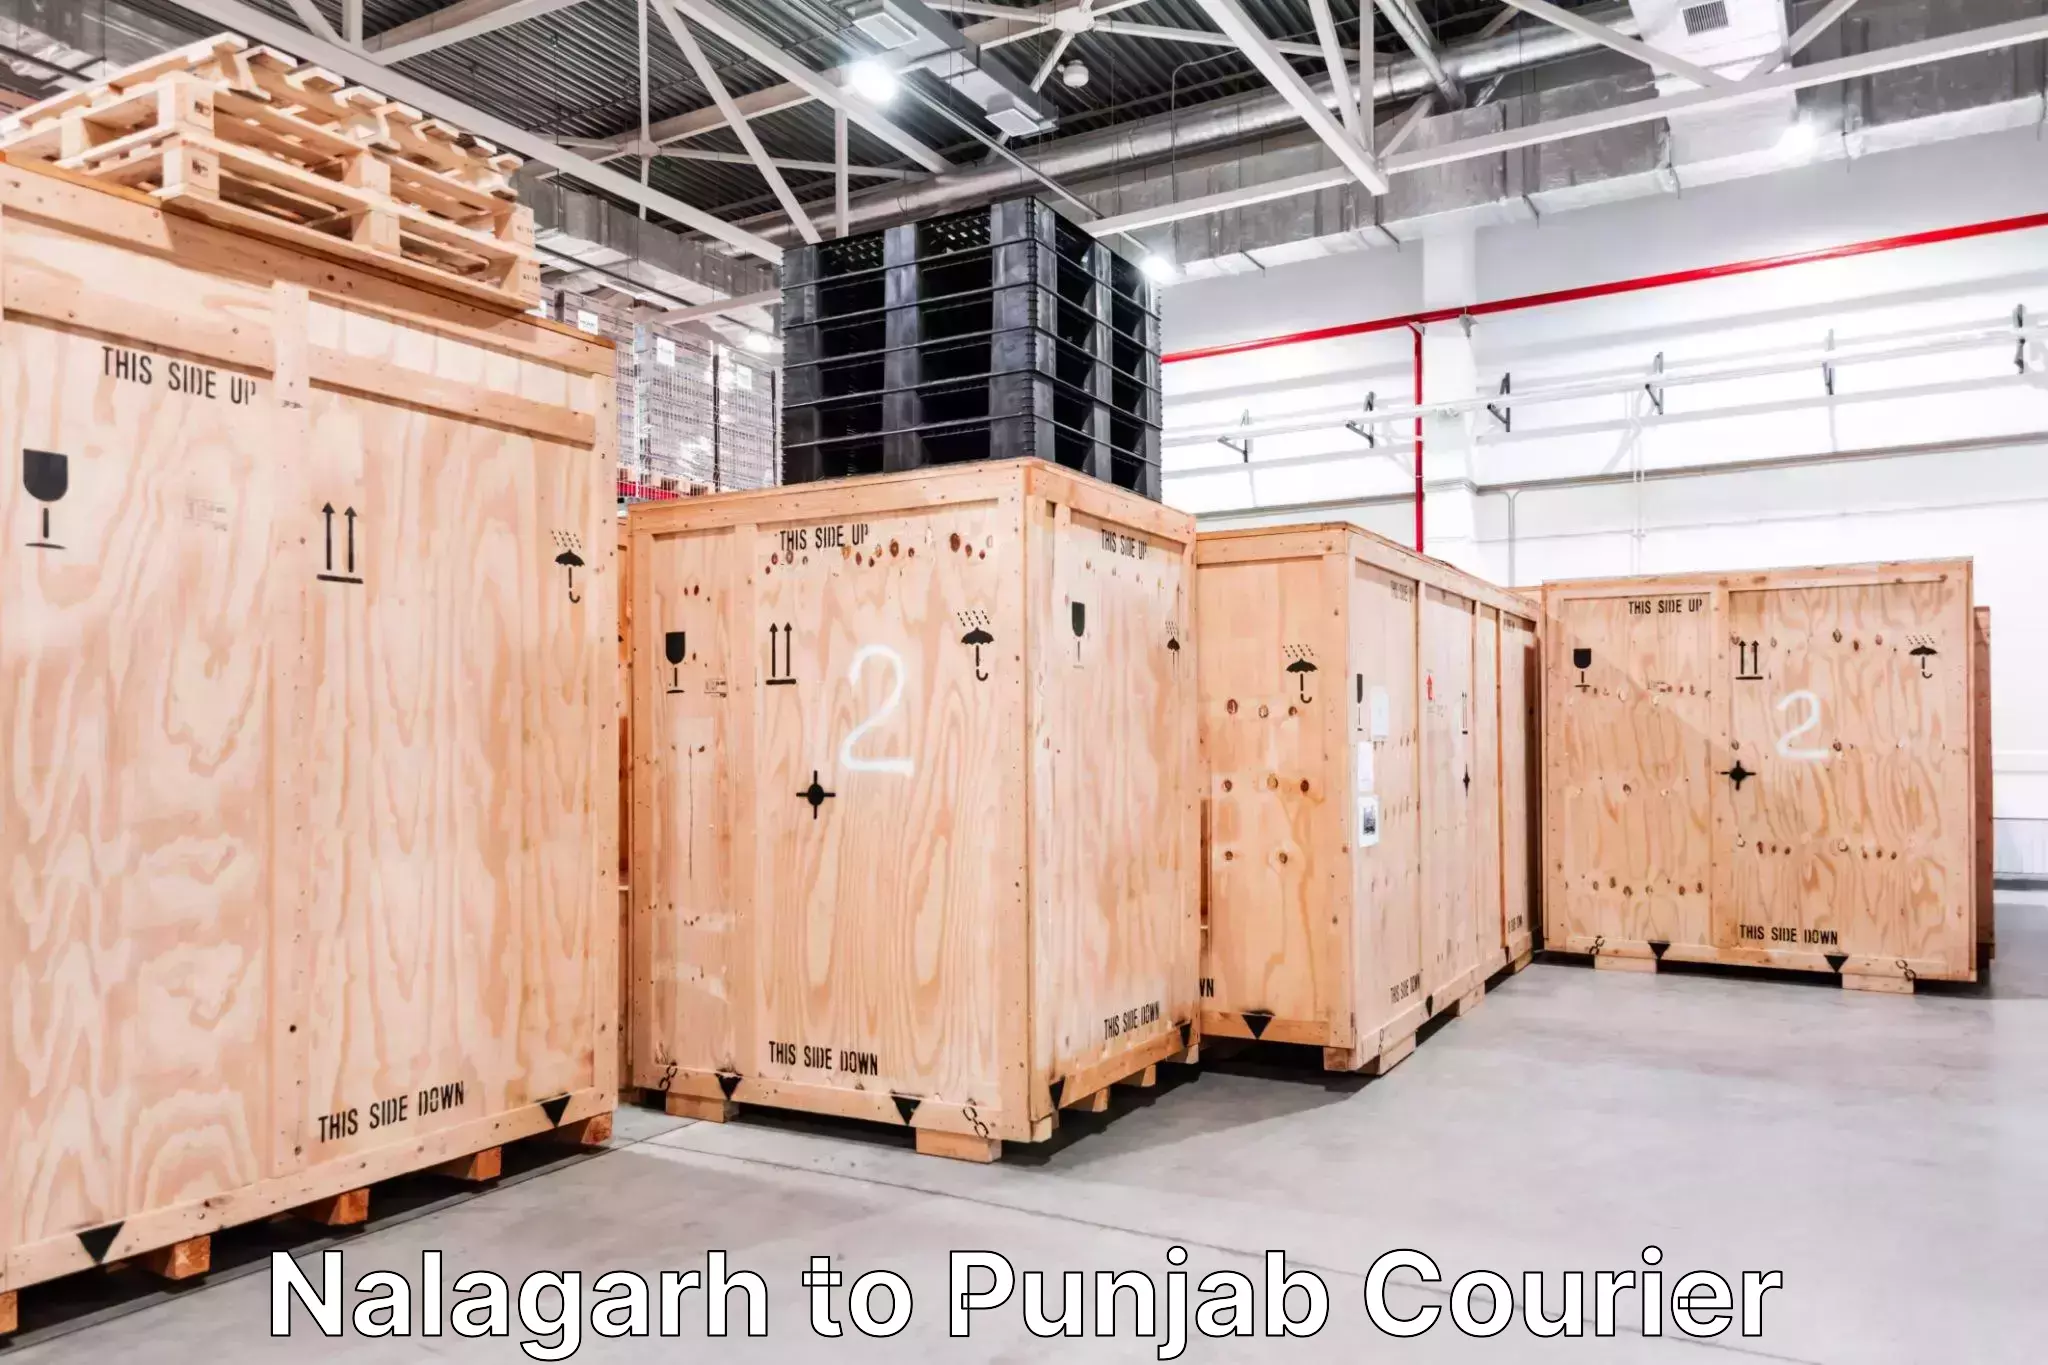 Baggage transport management Nalagarh to Punjab